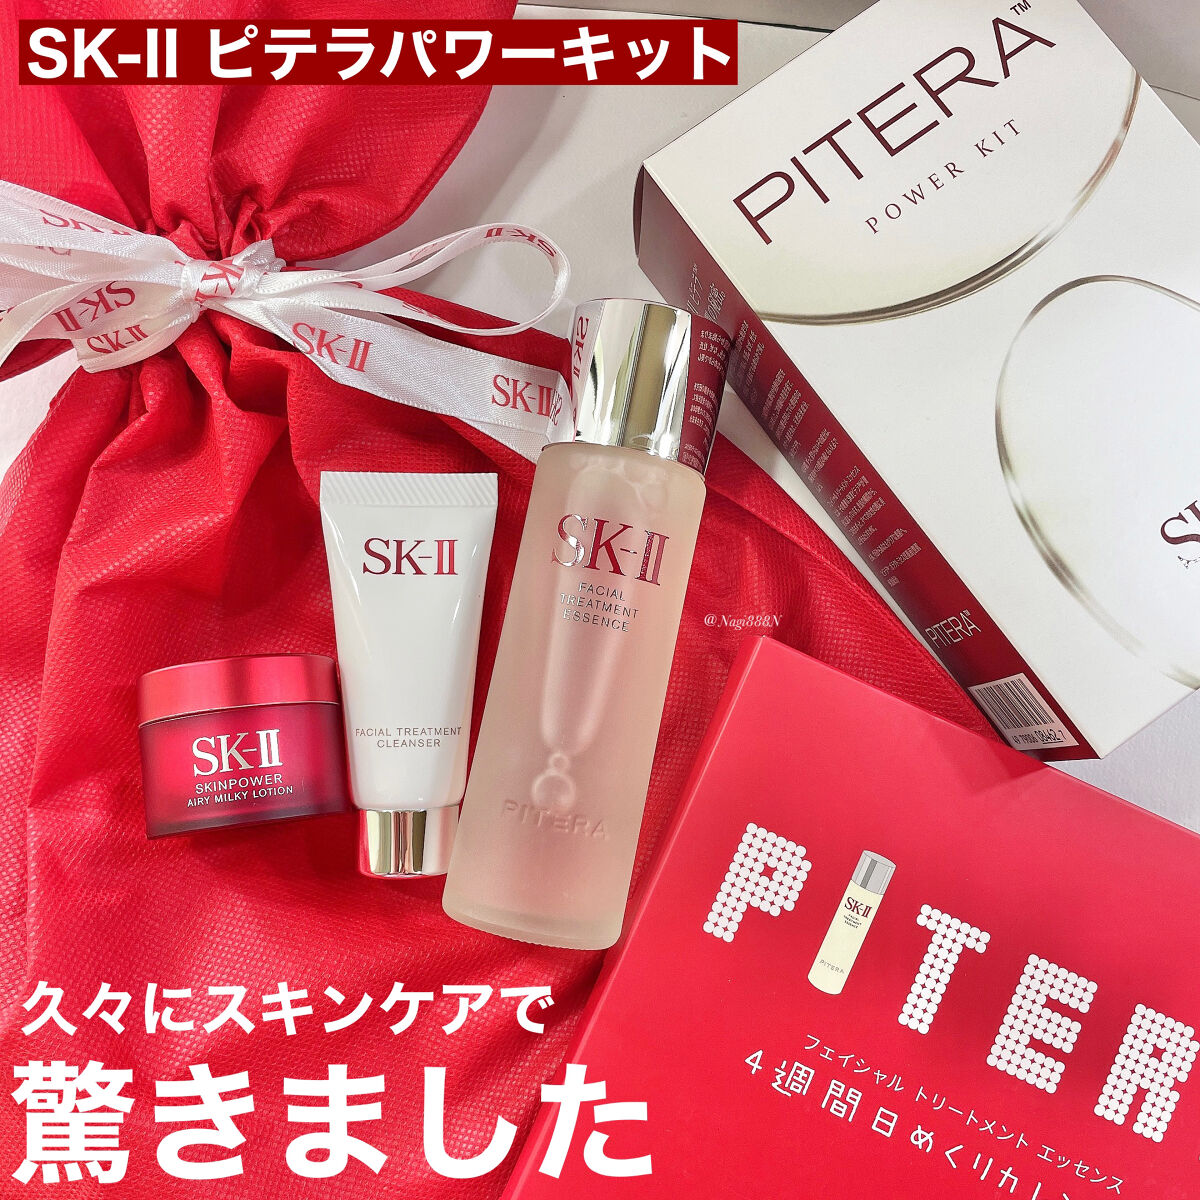 ネット買付 SK-II ピテラ パワー キット | artfive.co.jp